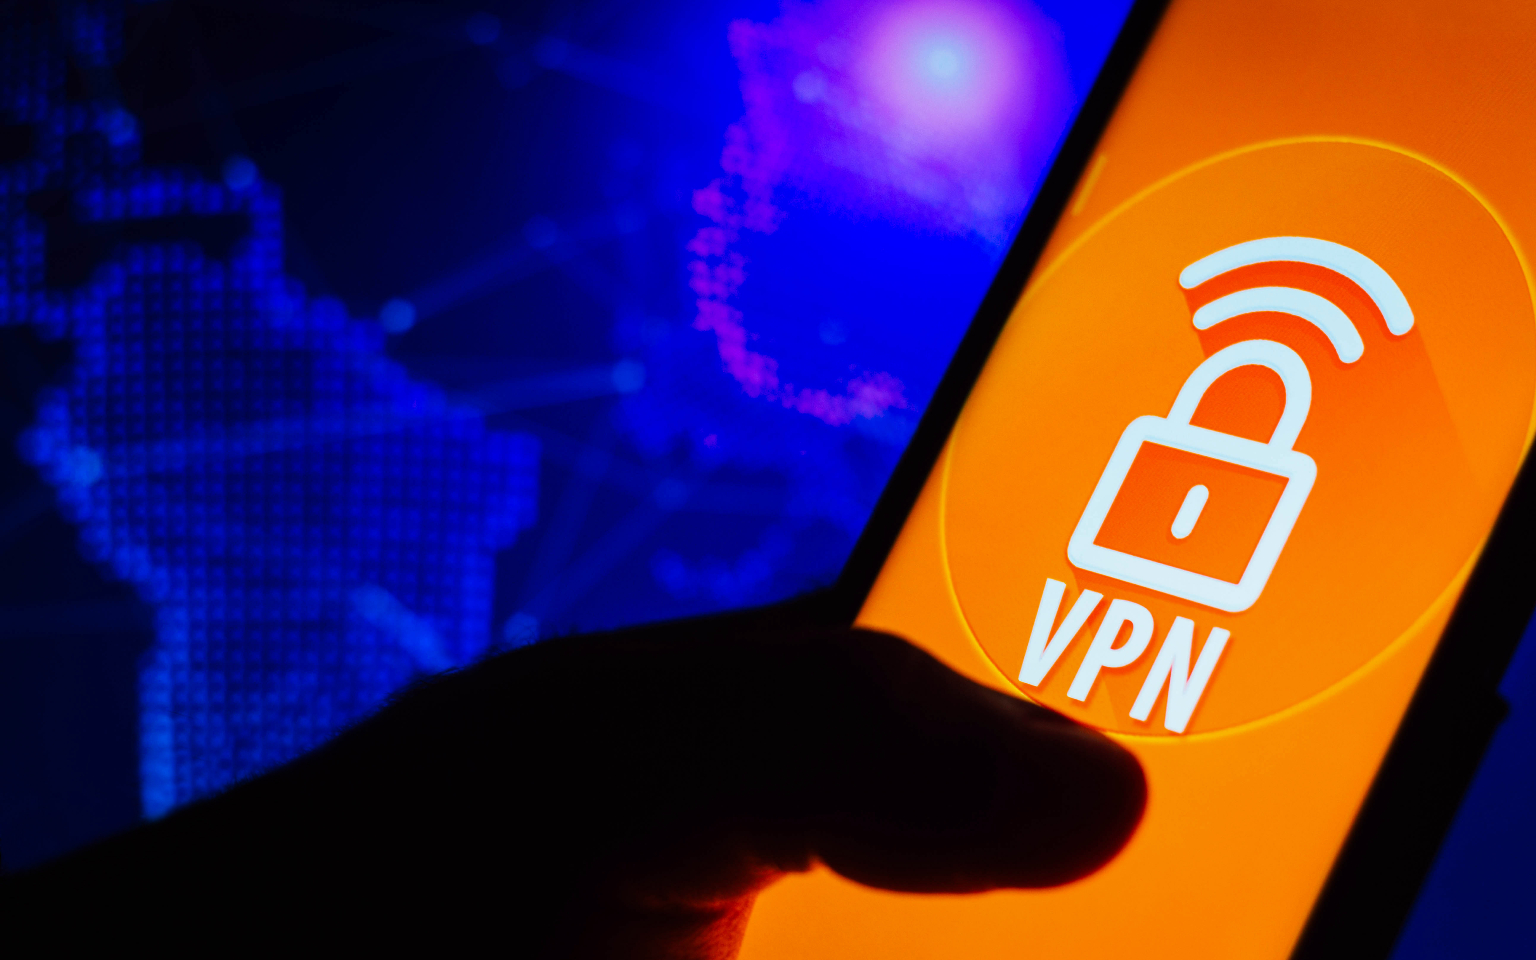 В Сеть утекла база данных более 45 млн пользователей VPN-сервисов